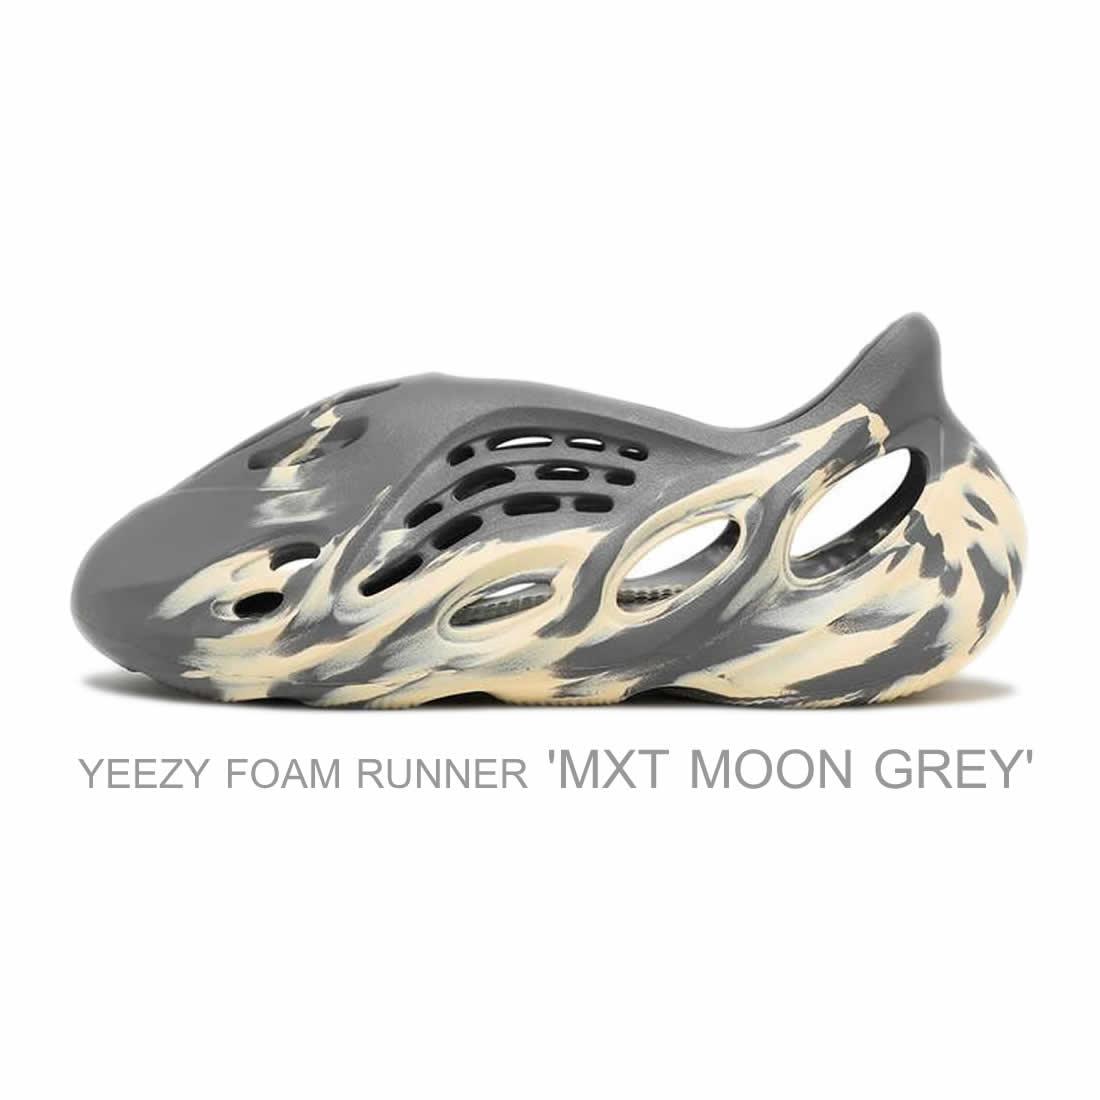 Yeezy Foam Runner Mxt Moon Grey 1 - www.kickbulk.org